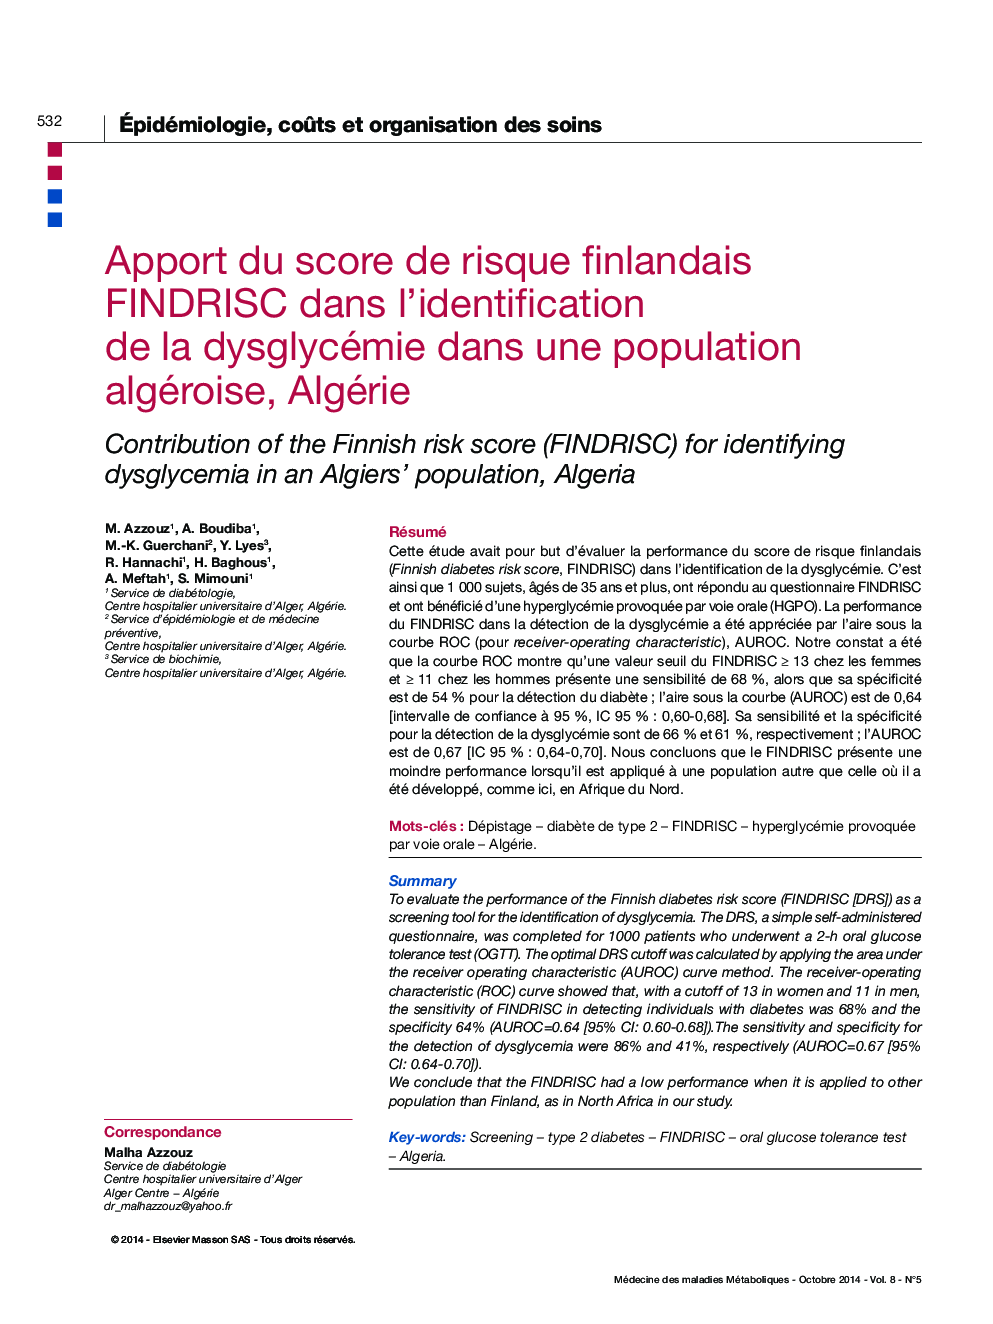 Apport du score de risque finlandais FINDRISC dans l'identification de la dysglycémie dans une population algéroise, Algérie